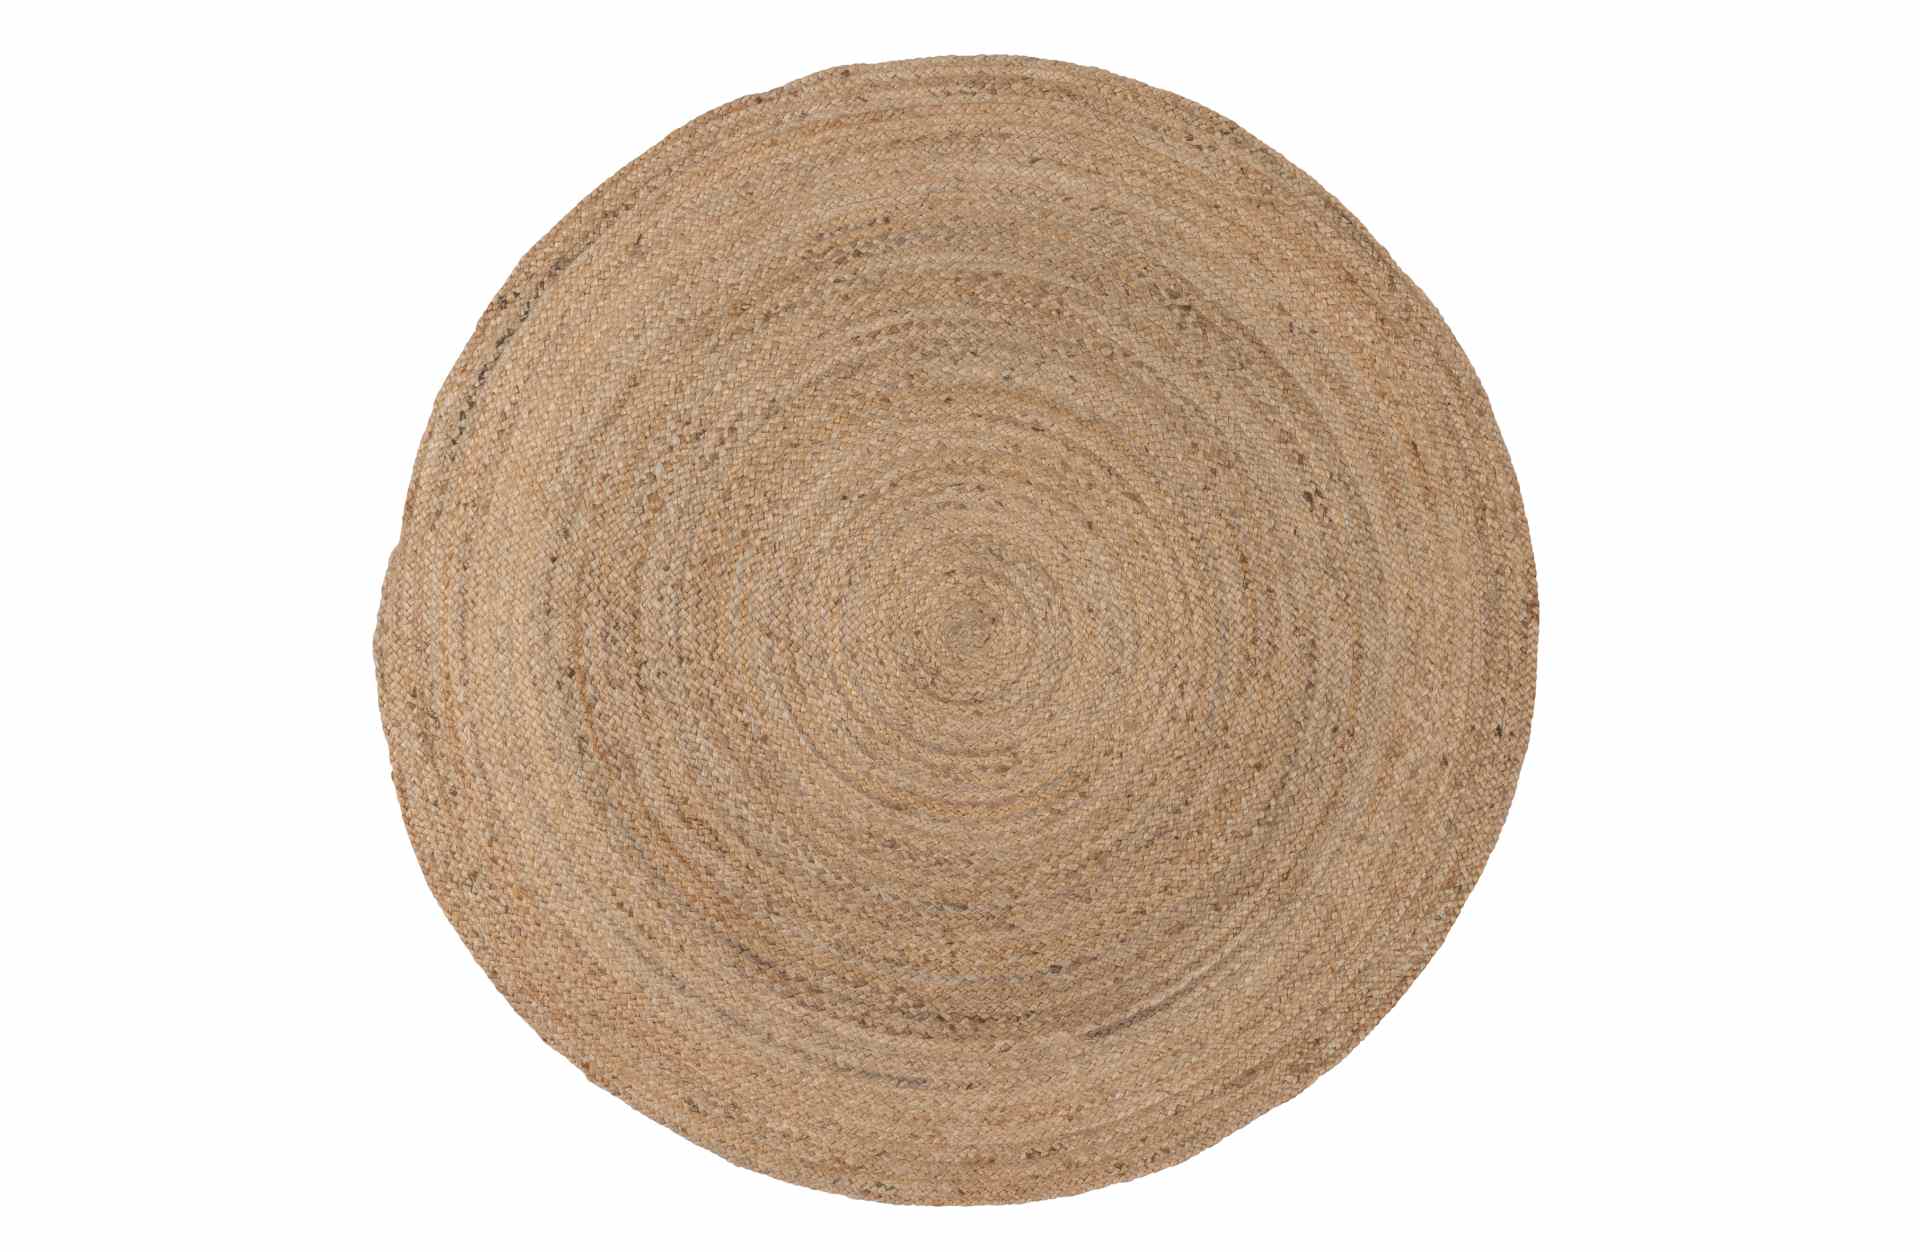 Der Teppich Ross überzeugt mit seinem klassischen Design. Gefertigt wurde er aus Jute, welche einen natürlichen Farbton besitzen. Der Teppich besitzt einen Durchmesser von 150 cm.